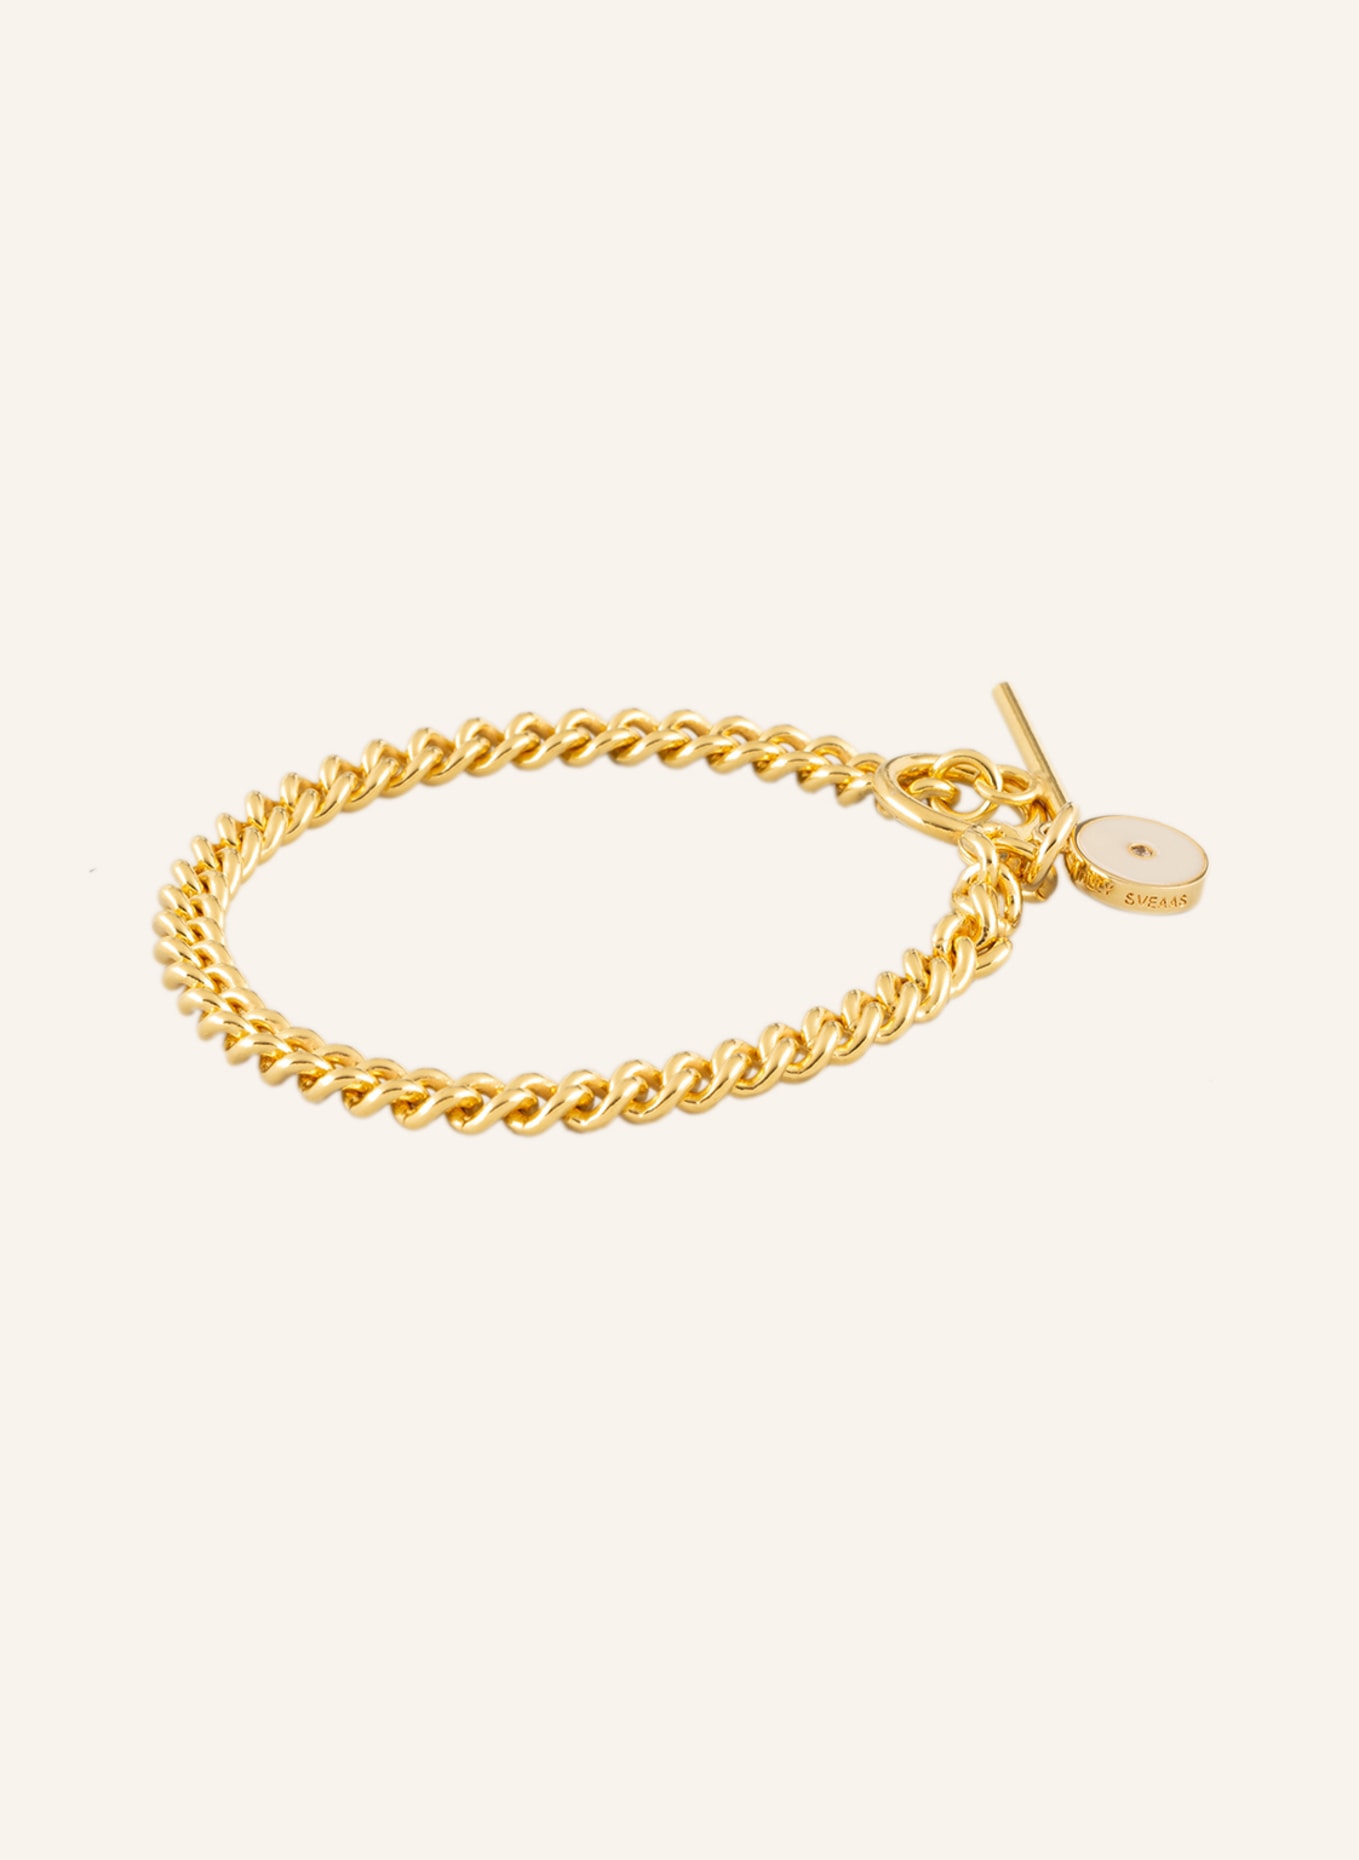 TILLY SVEAAS Bracelet with Swarovski crystals, Color: GOLD (Image 1)